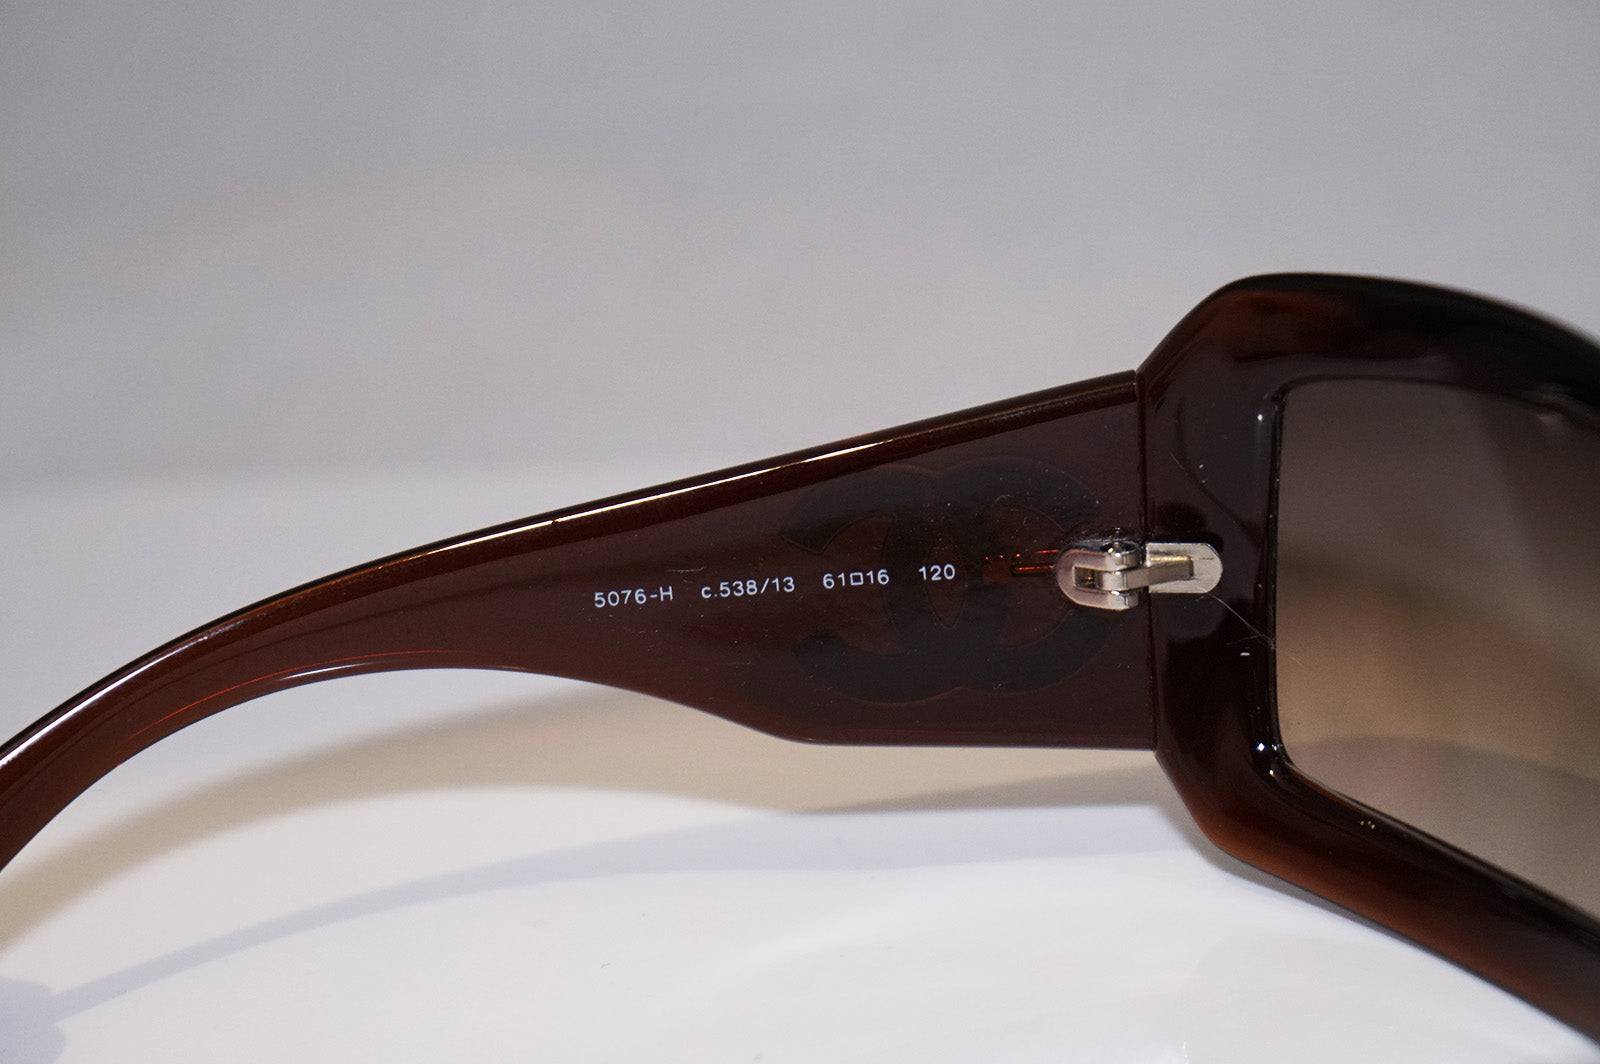 Sunglasses Chanel Brown in Plastic - 33127366